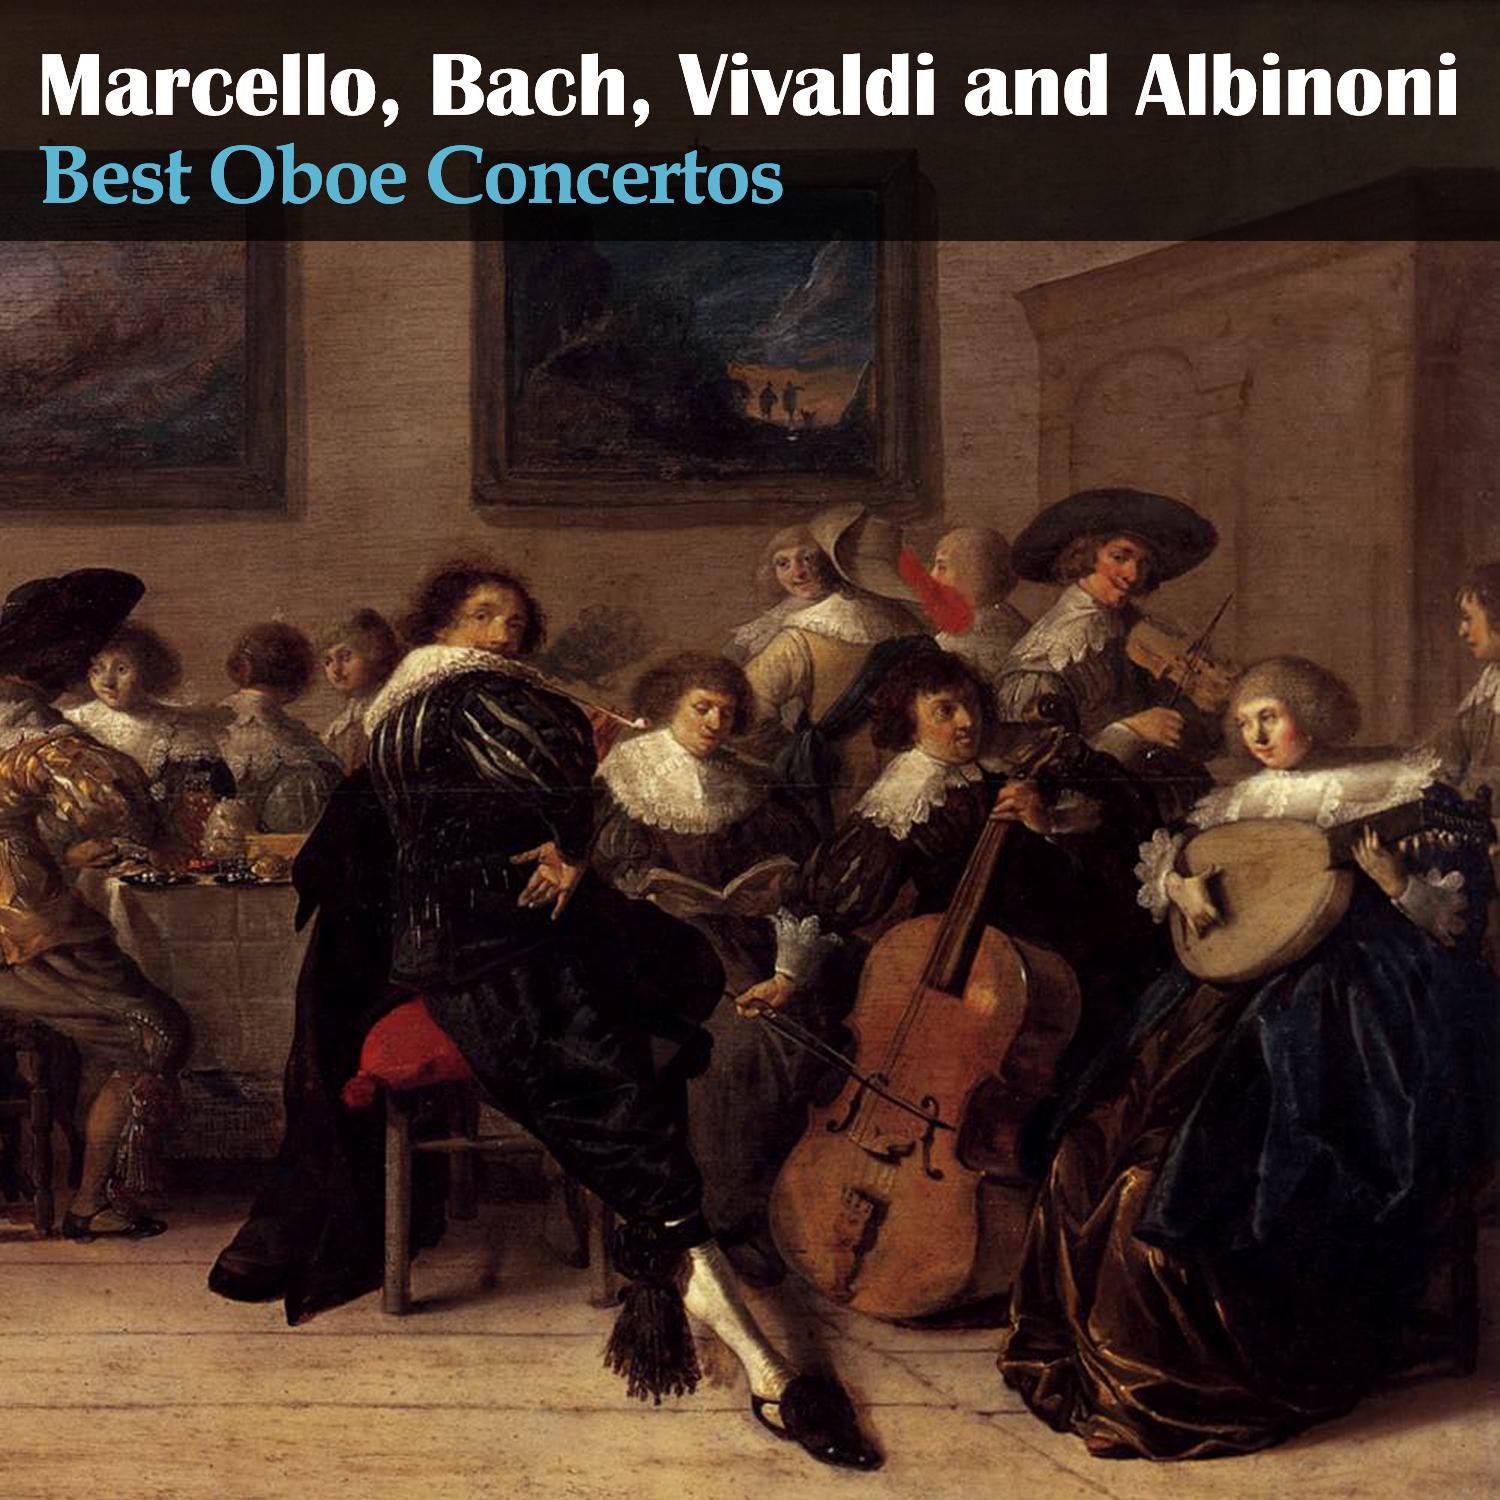 Antonio Vivaldi - Oboe Concerto in F Major, RV 457: I. Allegro con molto